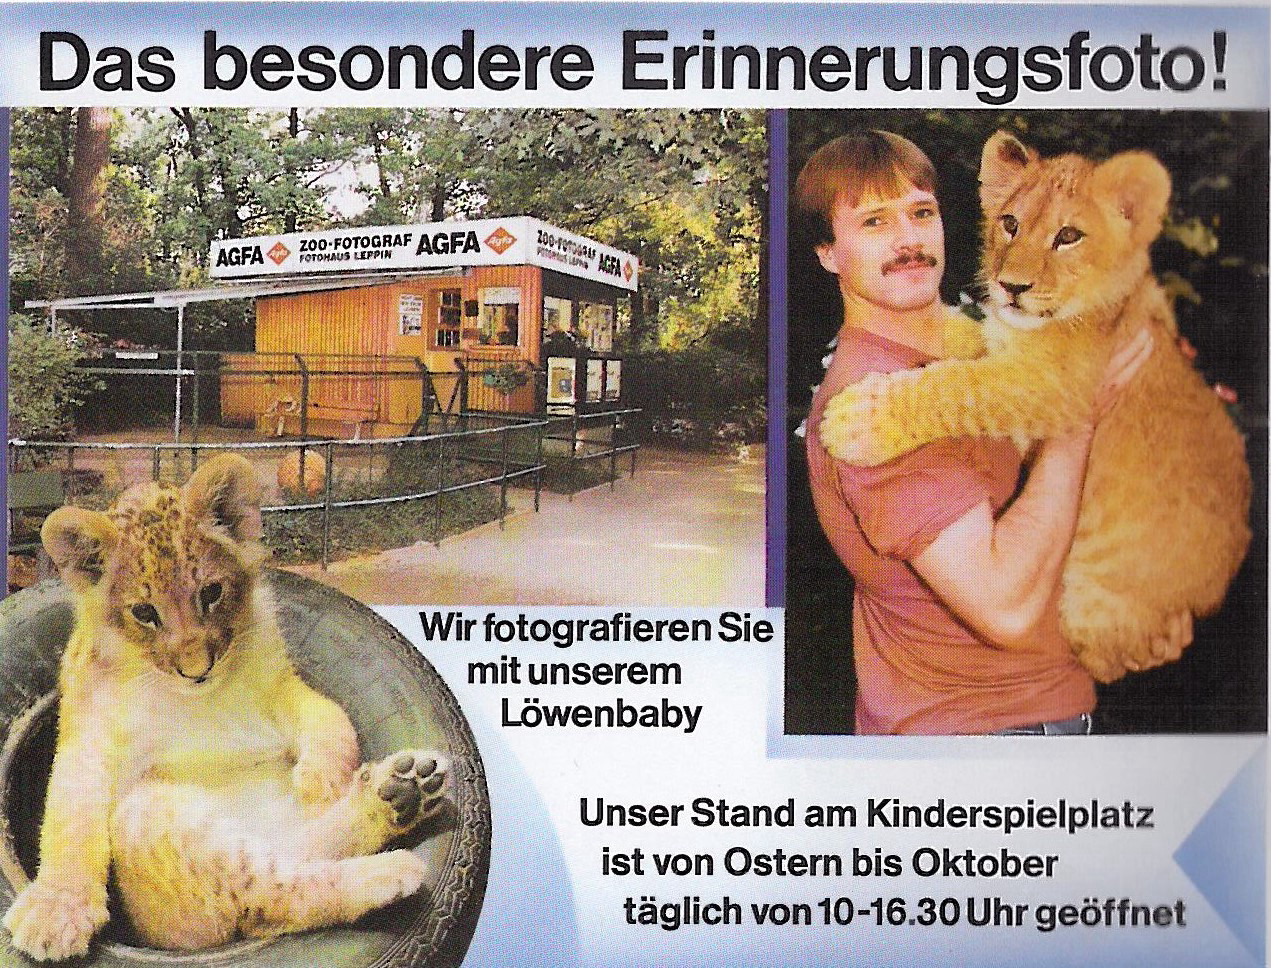 Werbeanzeige des Zoofotografen im Berliner Zooführer von 1992. Auf drei Farbfotografien sind oben links der Stand mit Bank abgebildet, unten links ein Löwenbaby in einem Reifen hineinmontiert und rechts ein stehender Mann, der einen jungen Löwen auf dem Arm trägt.